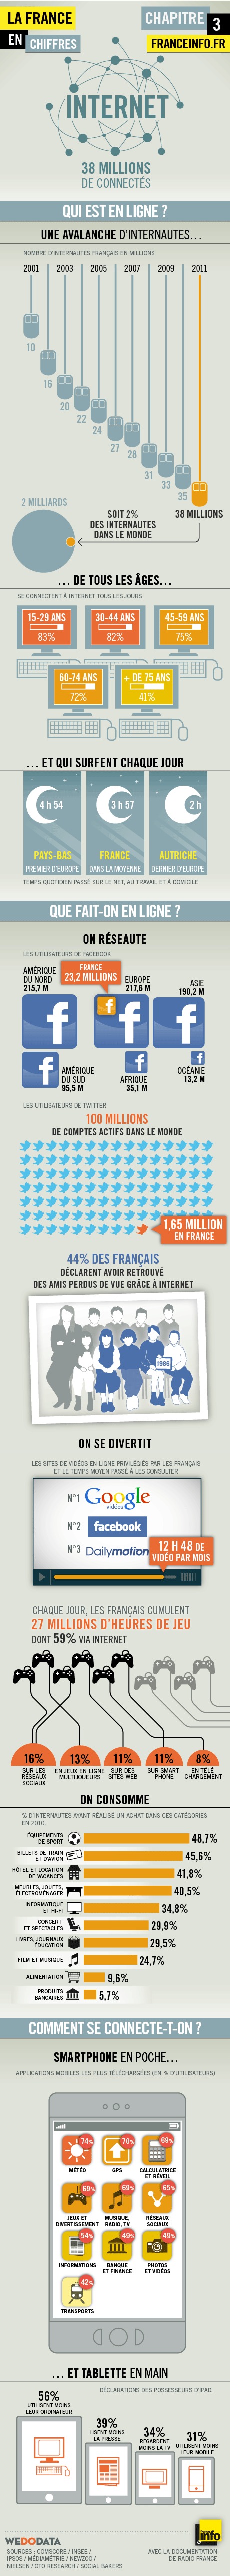 L'internet français en chiffres et 1 image